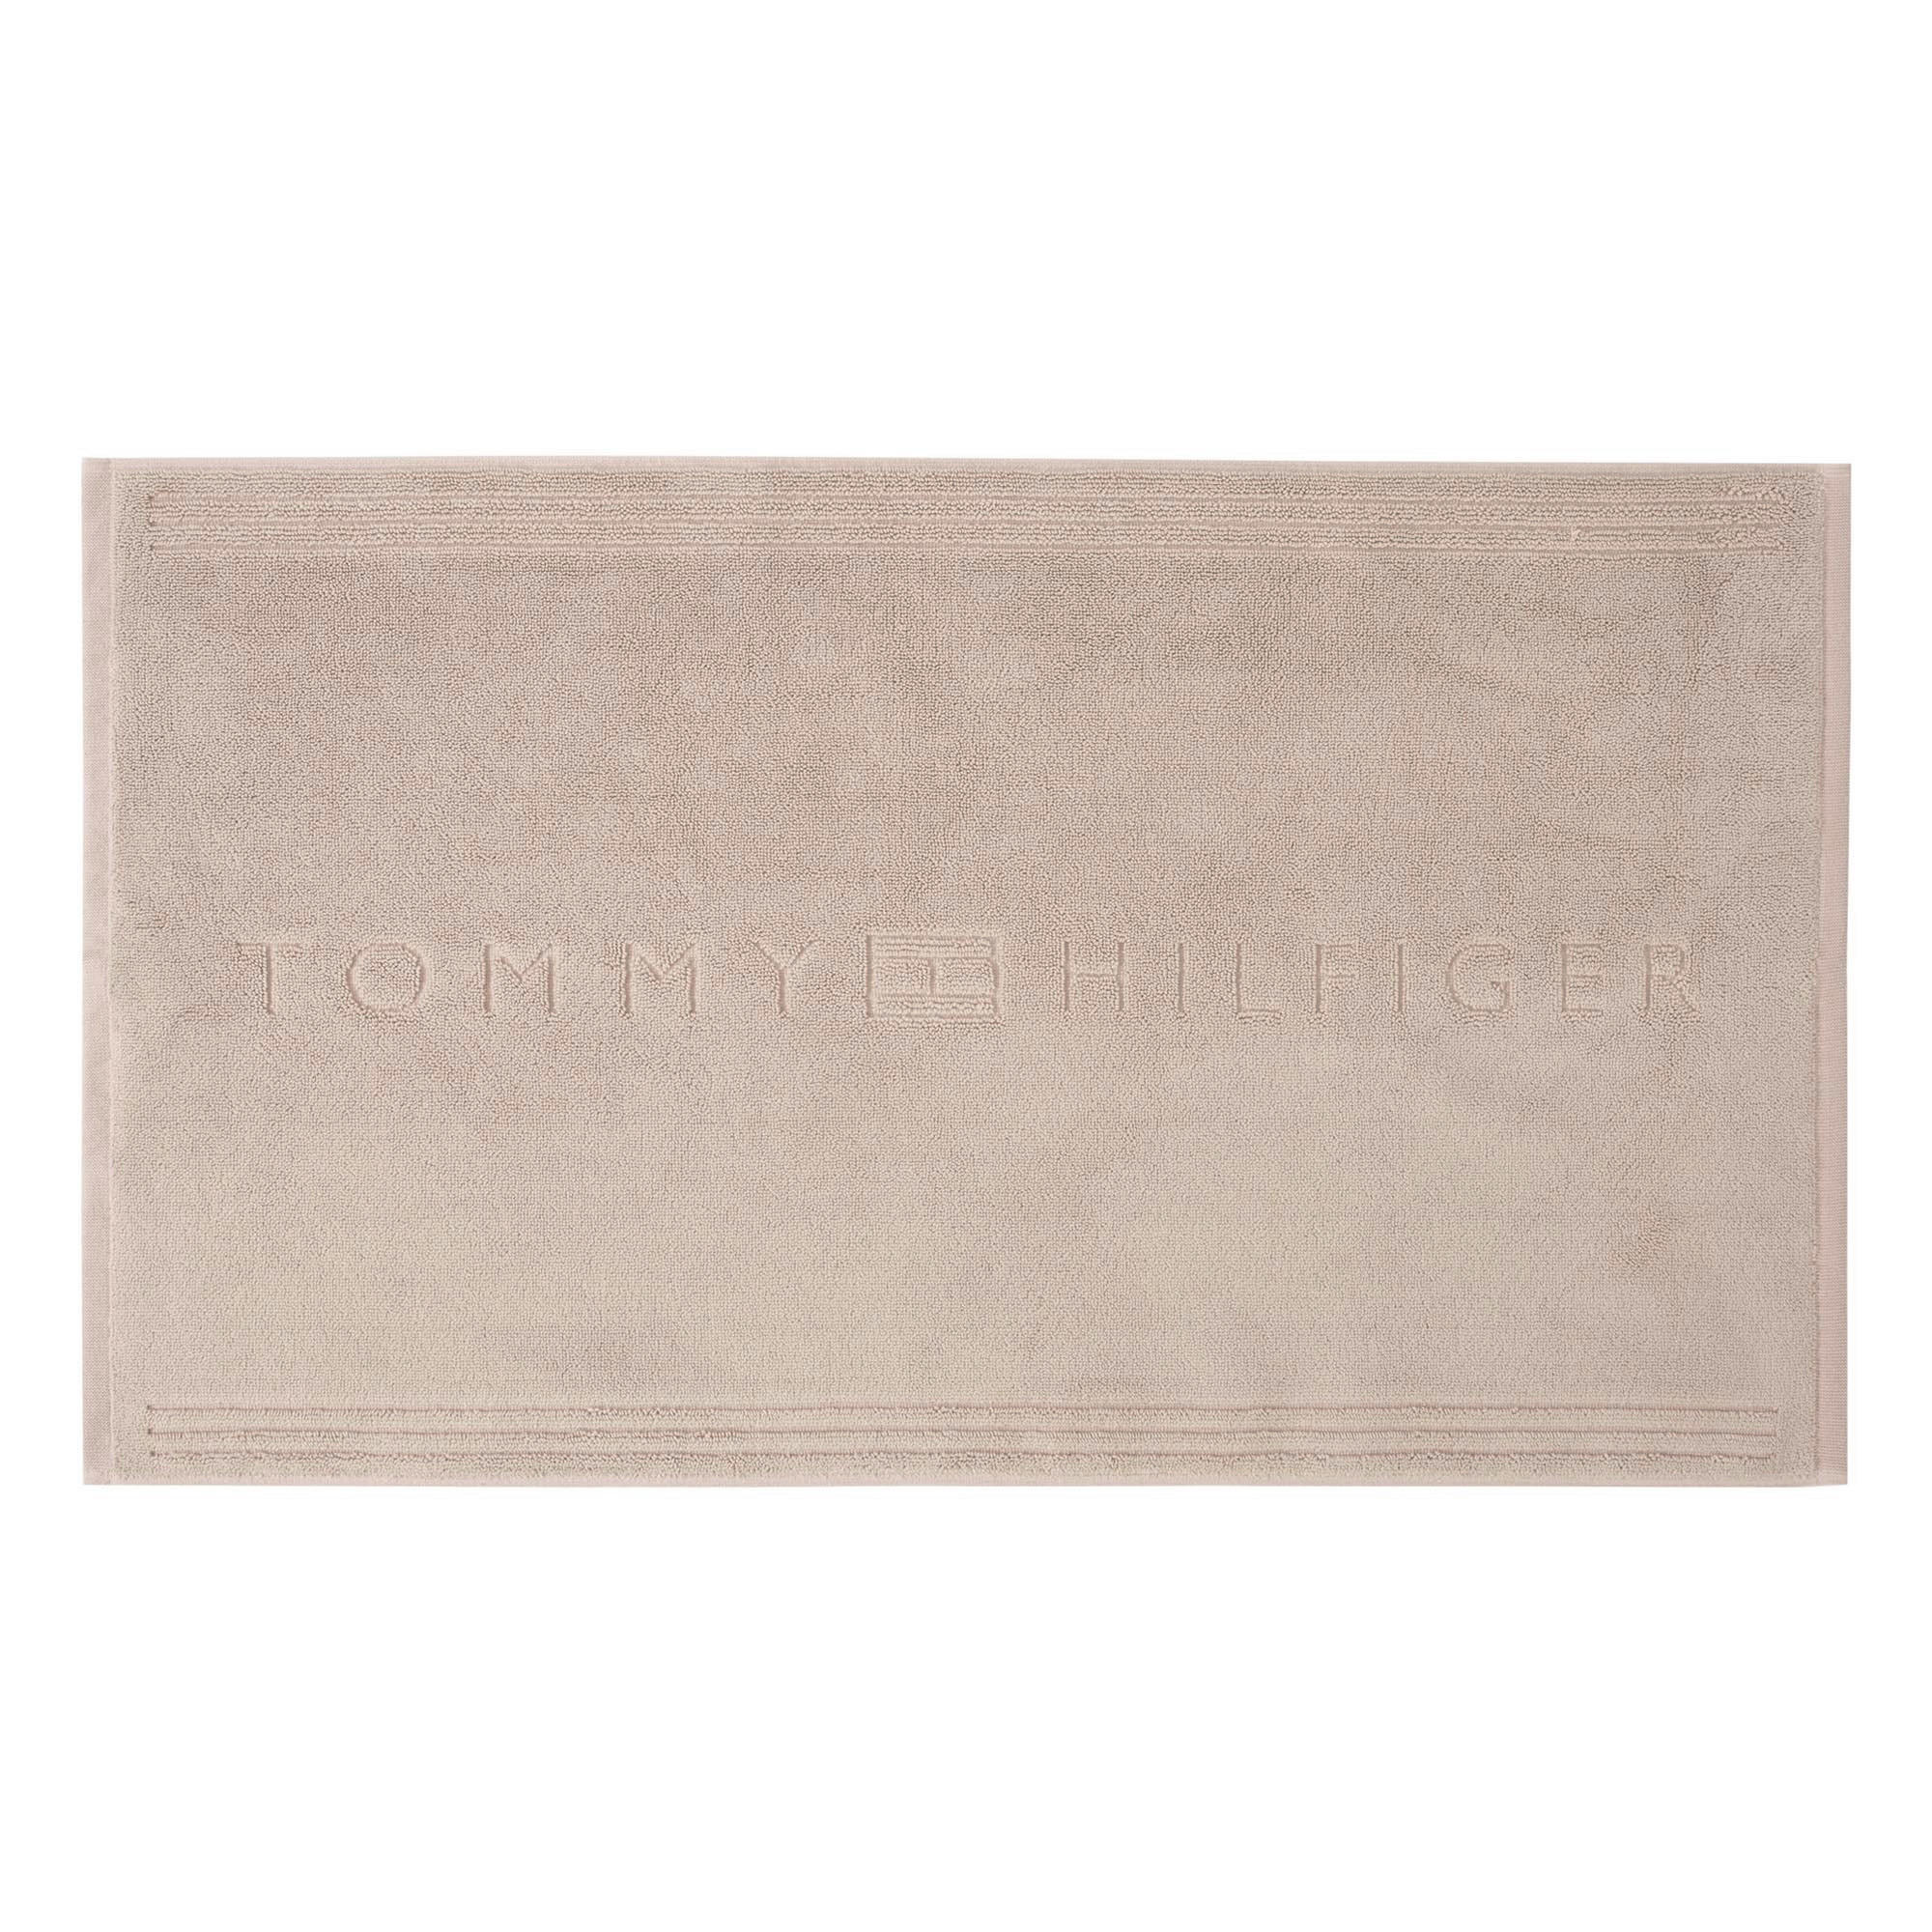 BADEMATTE  Plain 50/80 cm  - Sandfarben, Basics, Textil (50/80cm) - Tommy Hilfiger